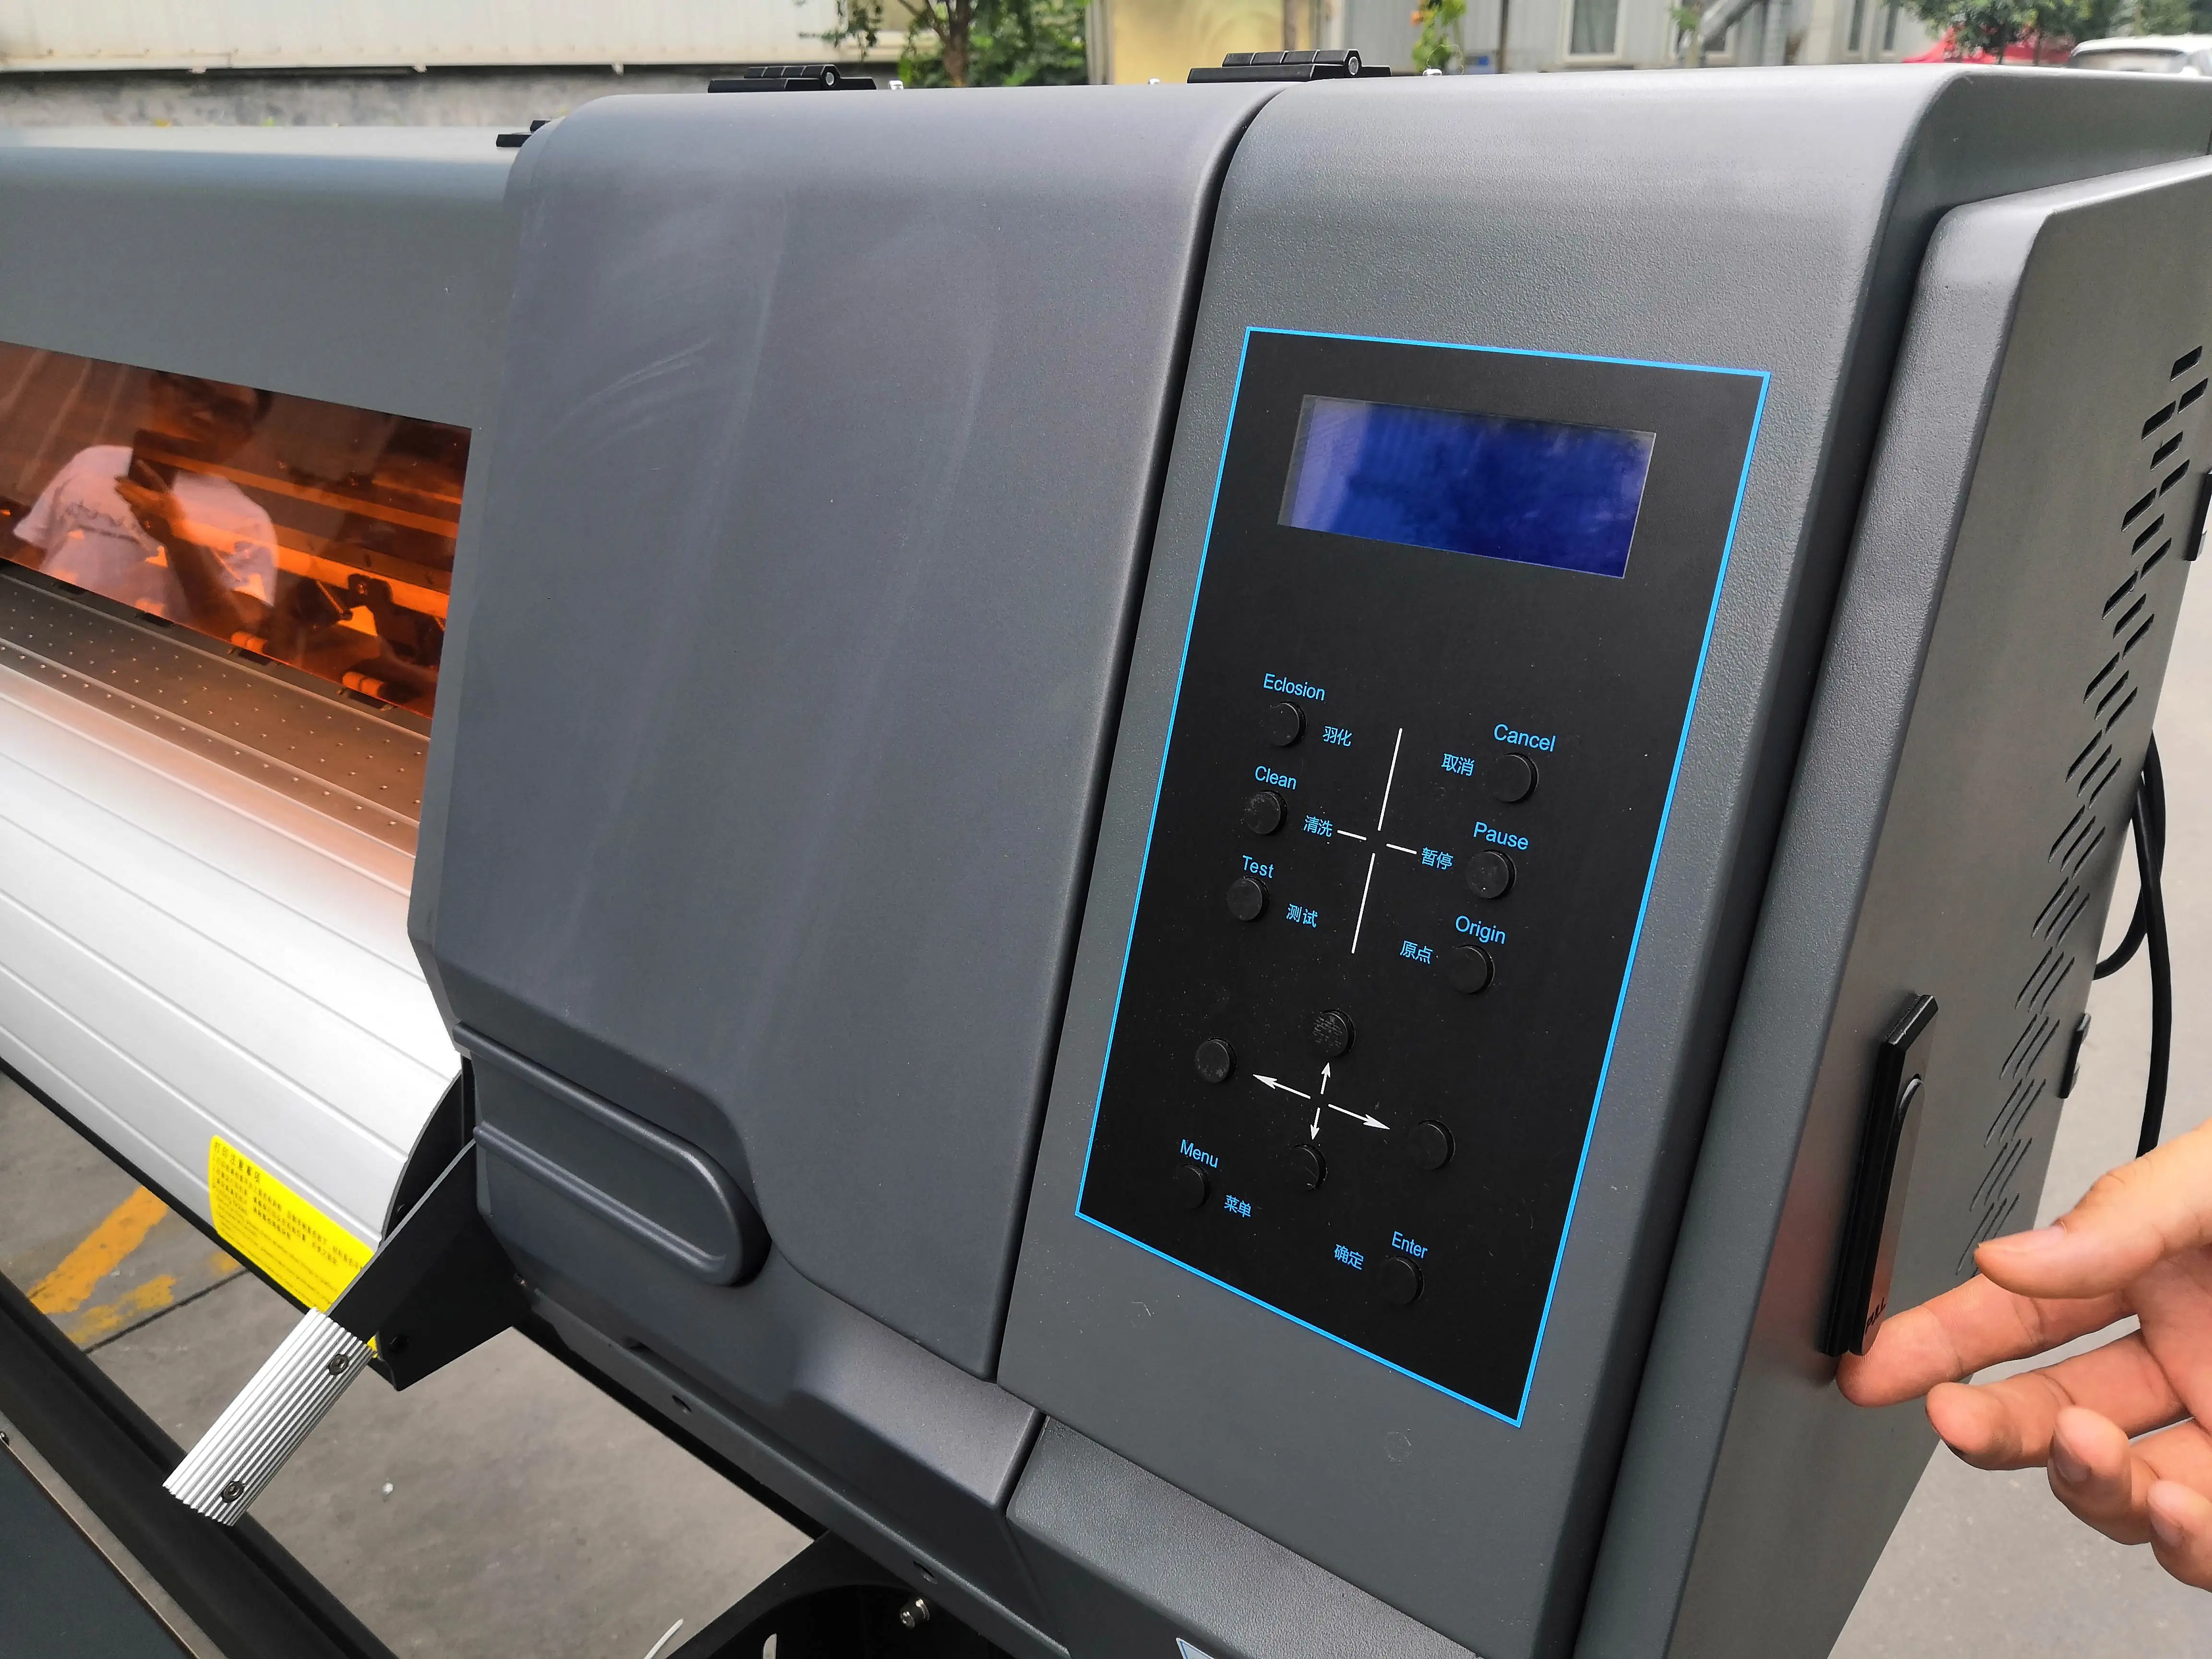 Impressora de vinil digital barata, alta velocidade 1.8m, eco solvente, impressora plotter de inkjet com cabeça única ou dupla